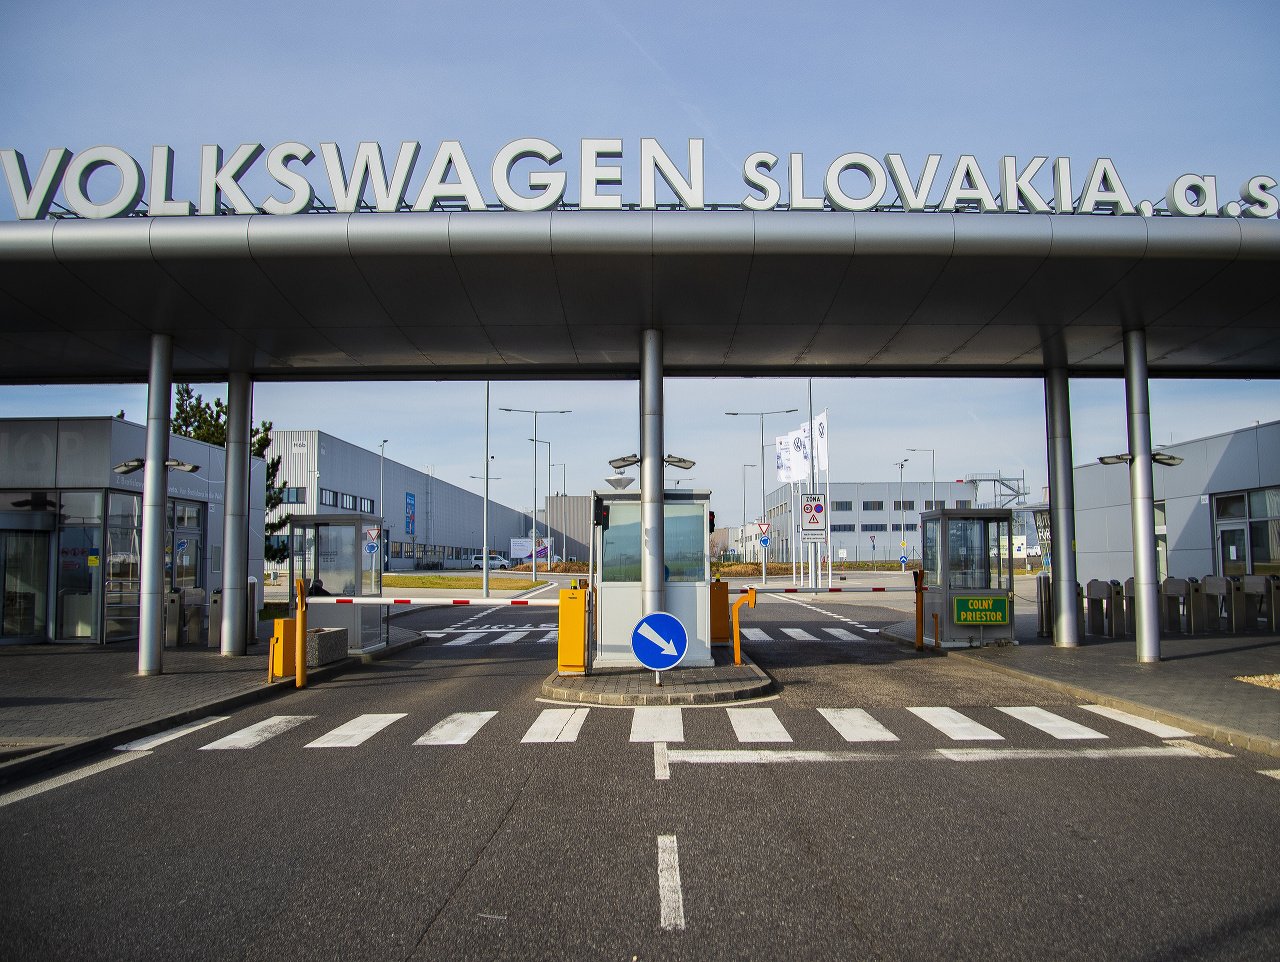 Spoločnosť Volkswagen Slovakia spustila po prestávke výrobu automobilov.